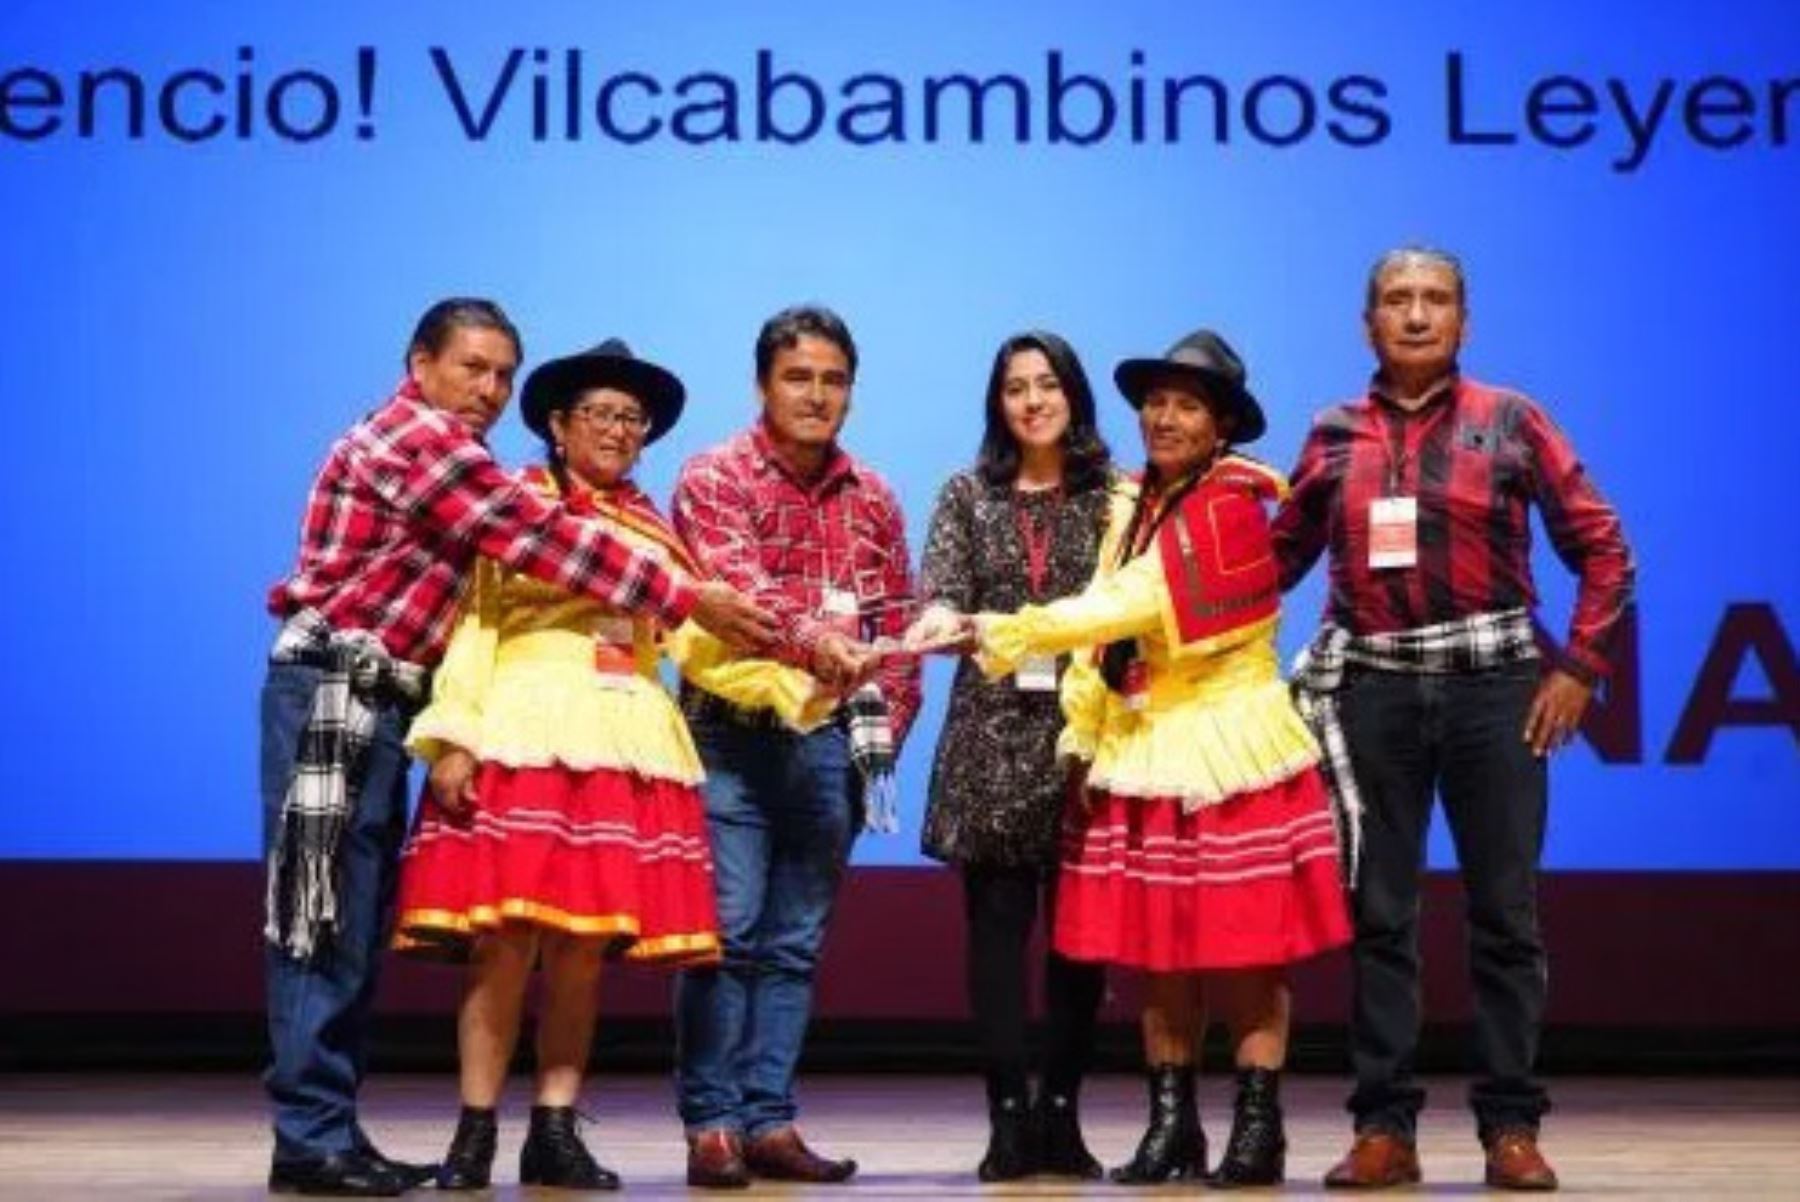 La iniciativa "¡Silencio! Vilcabambinos leyendo" obtuvo el primer lugar de la categoría Educación del Premio 2019: Buenas Prácticas en Gestión Pública, que otorga Ciudadanos al Día.